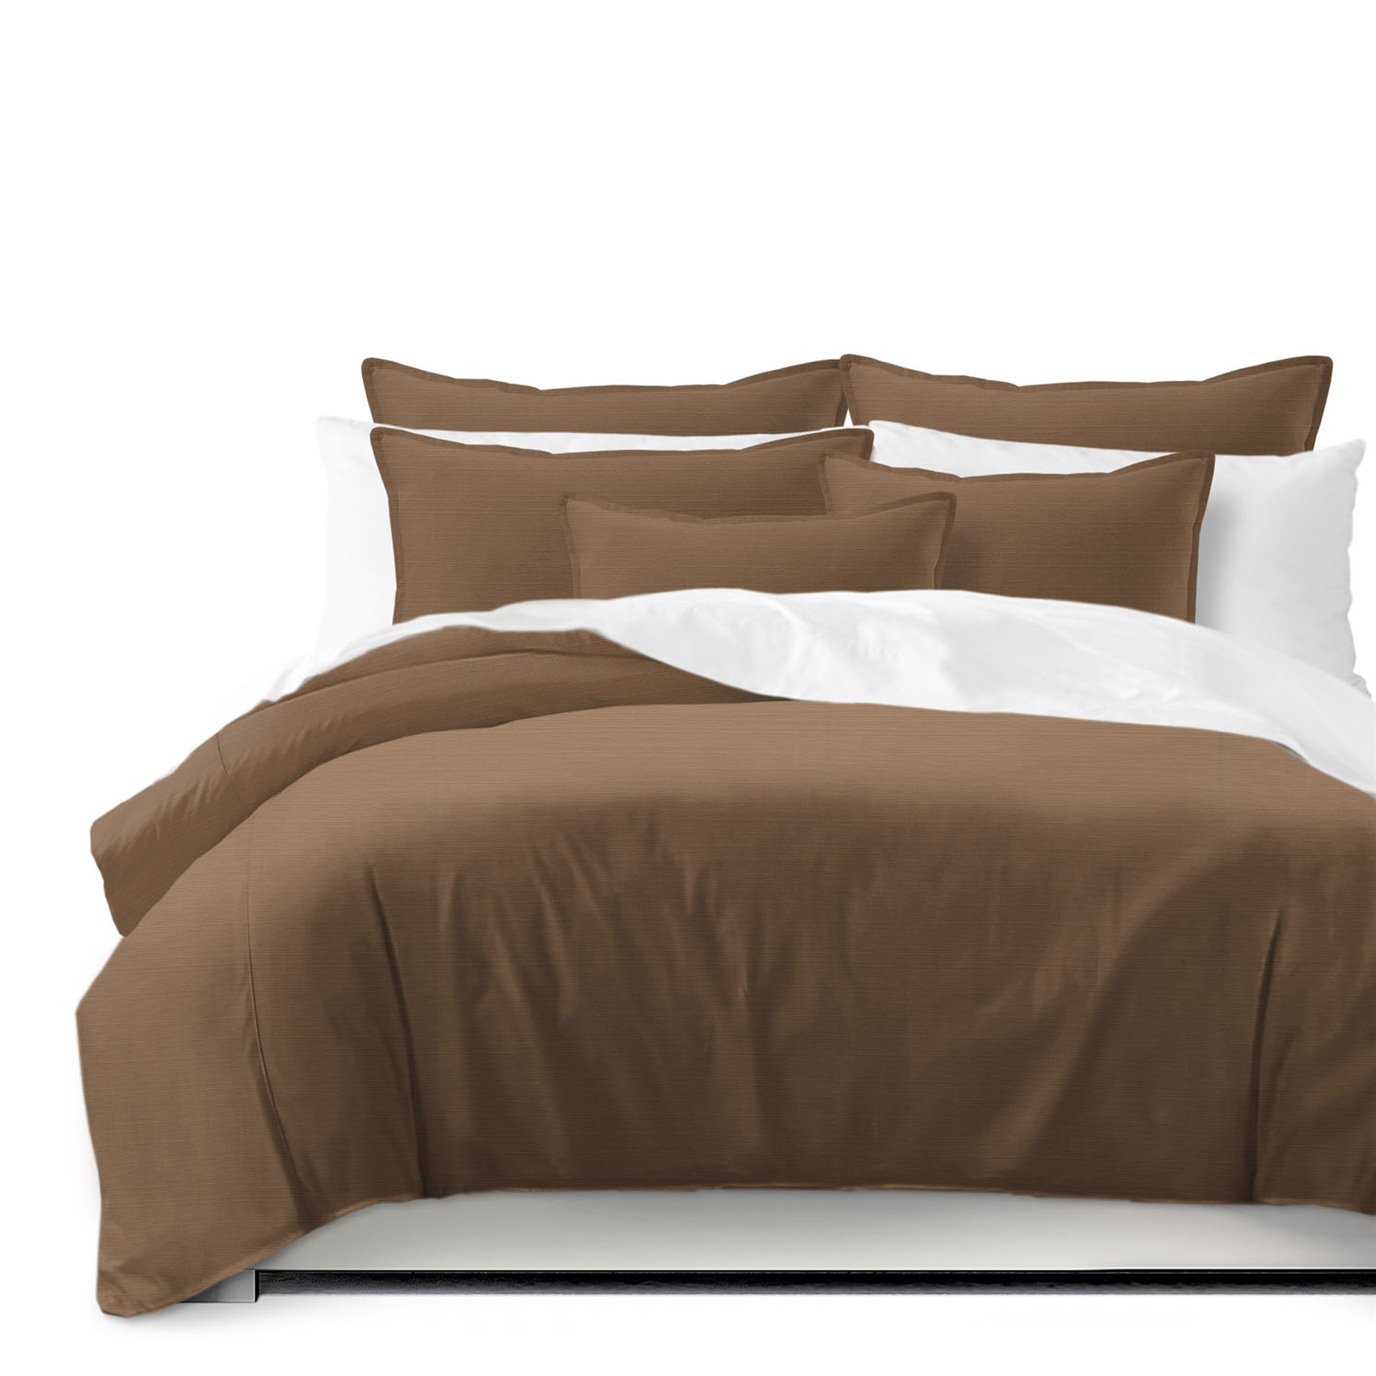 Nova Walnut Comforter and Pillow Sham(s) Set - Size Queen